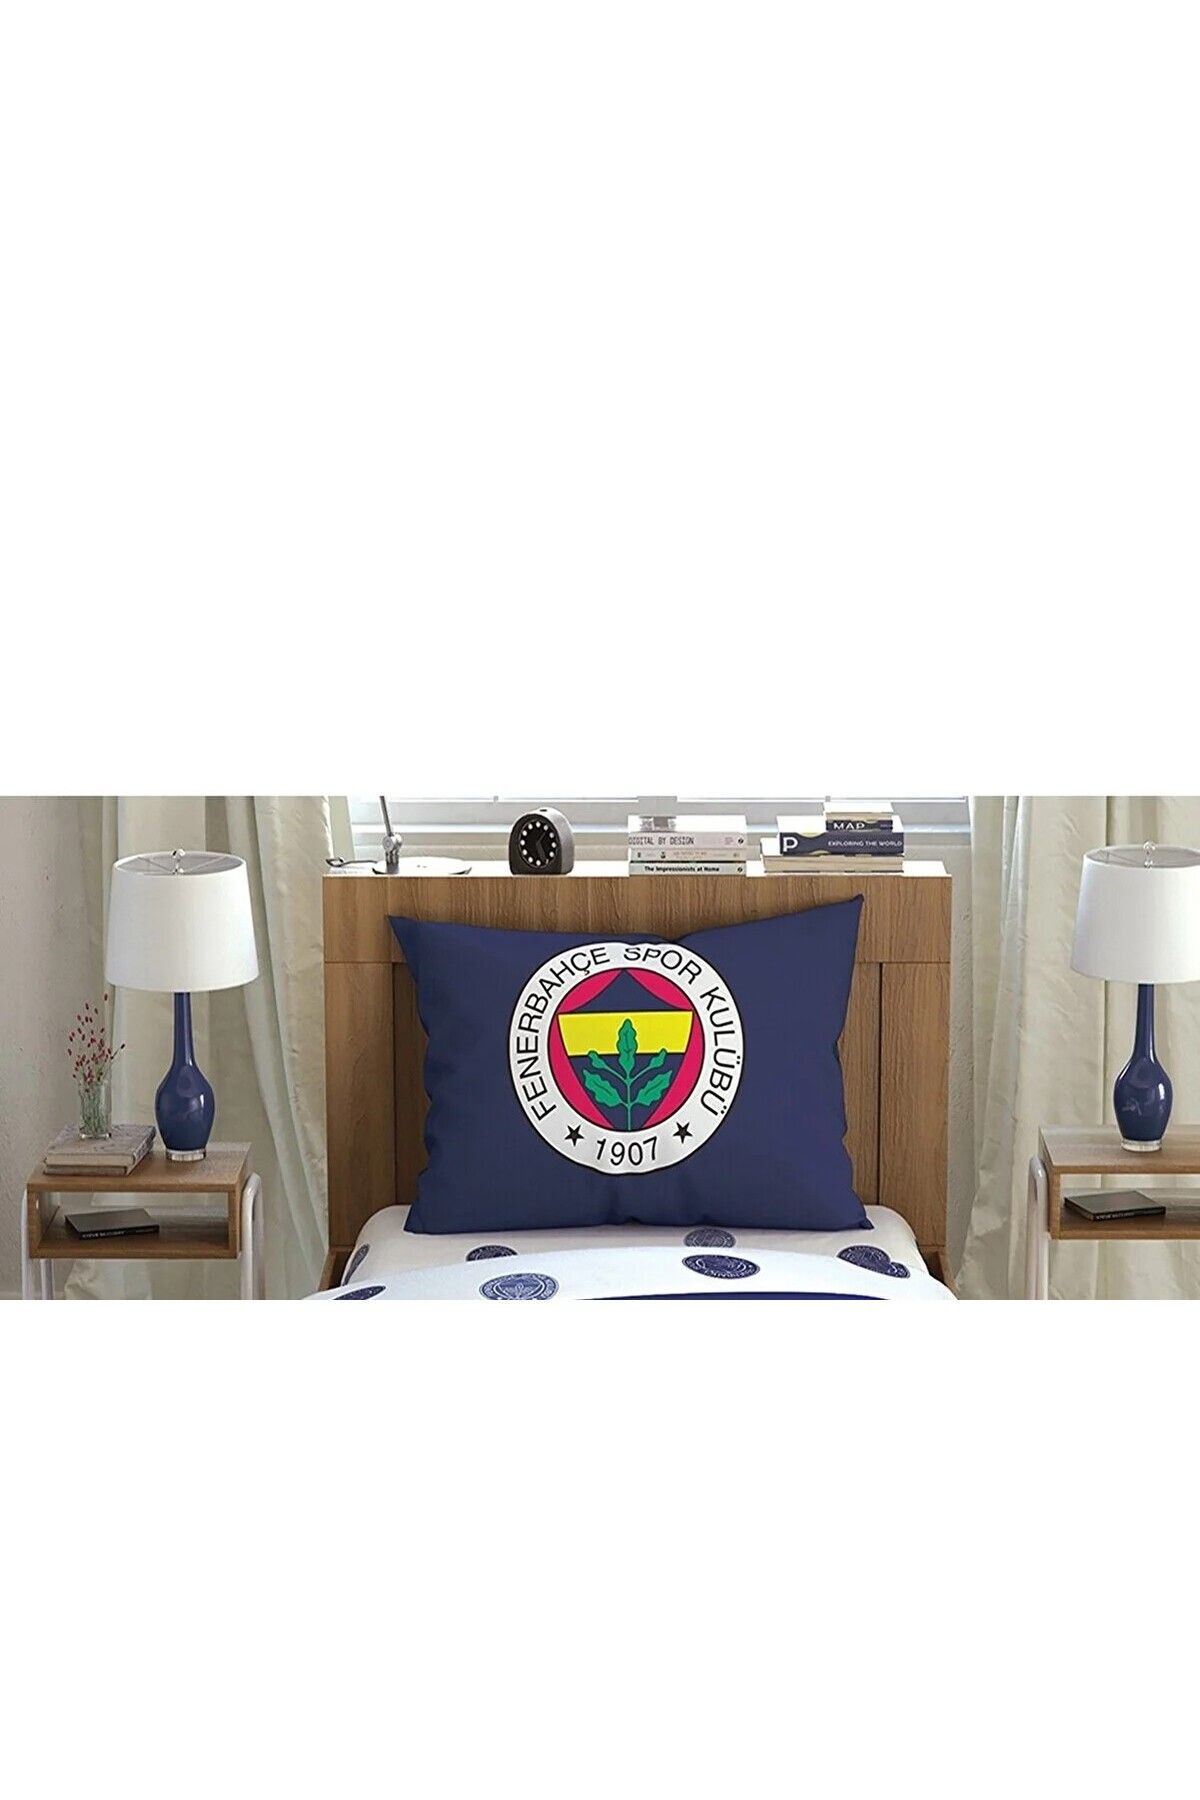 Taç Outlet Fenerbahçe Çarşaf Seti Tek Kişilik 100x200 Cm 50x70 Cm